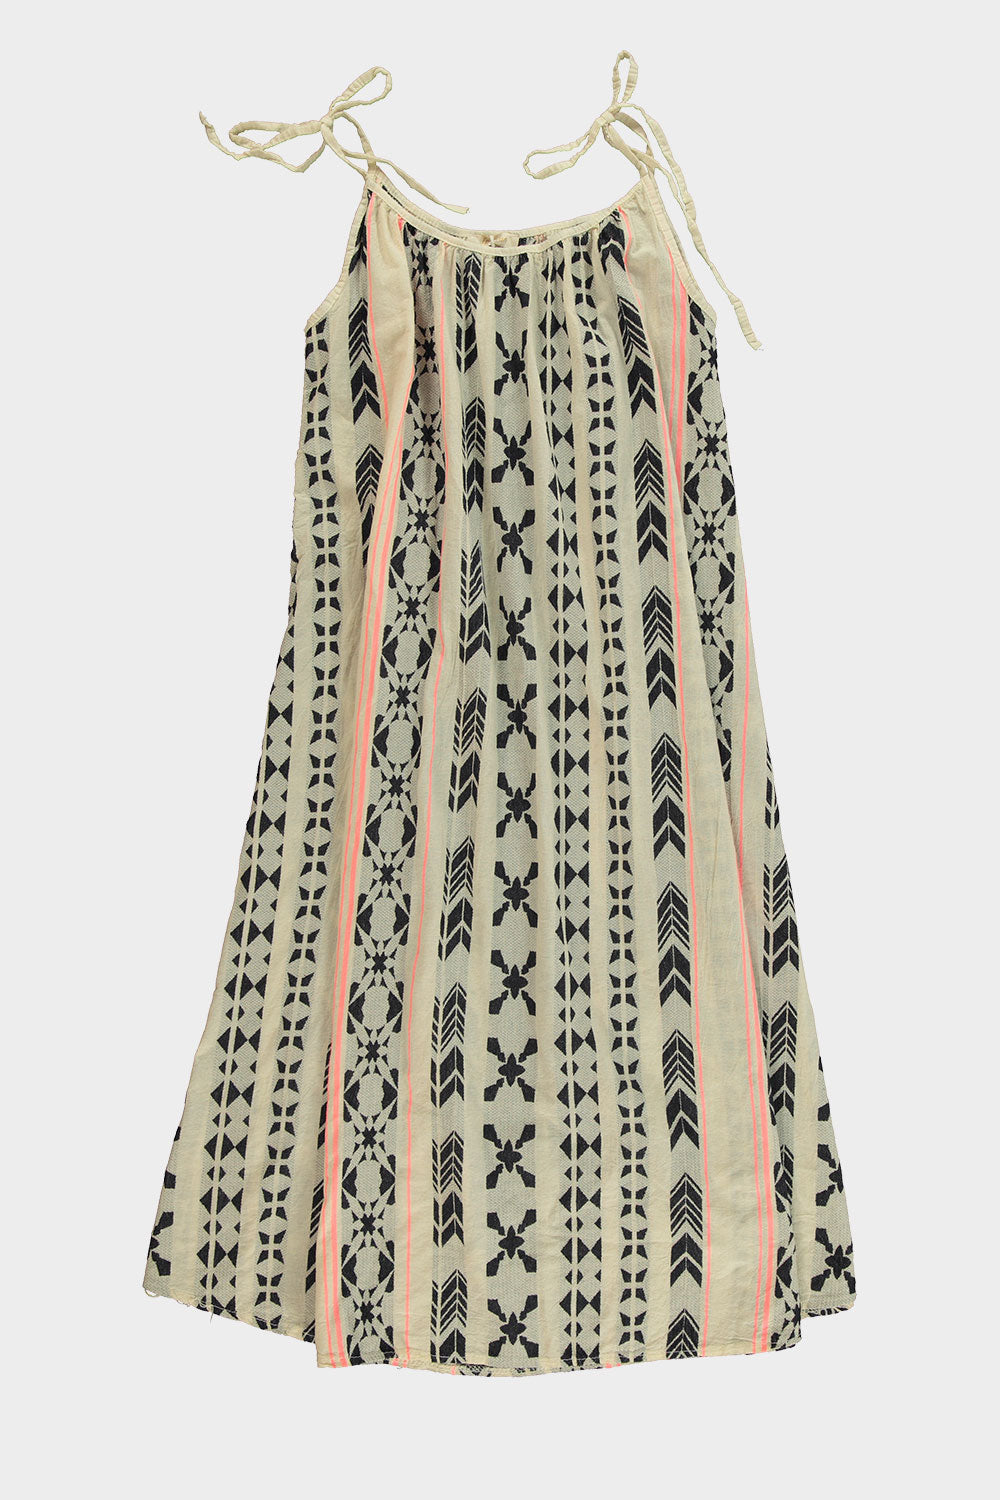 Jurk Aztec Zwart/Roze is een maxidress met verstelbare spaghetti bandjes.   De jurk is one size en is te dragen van maat S t/m XXL.